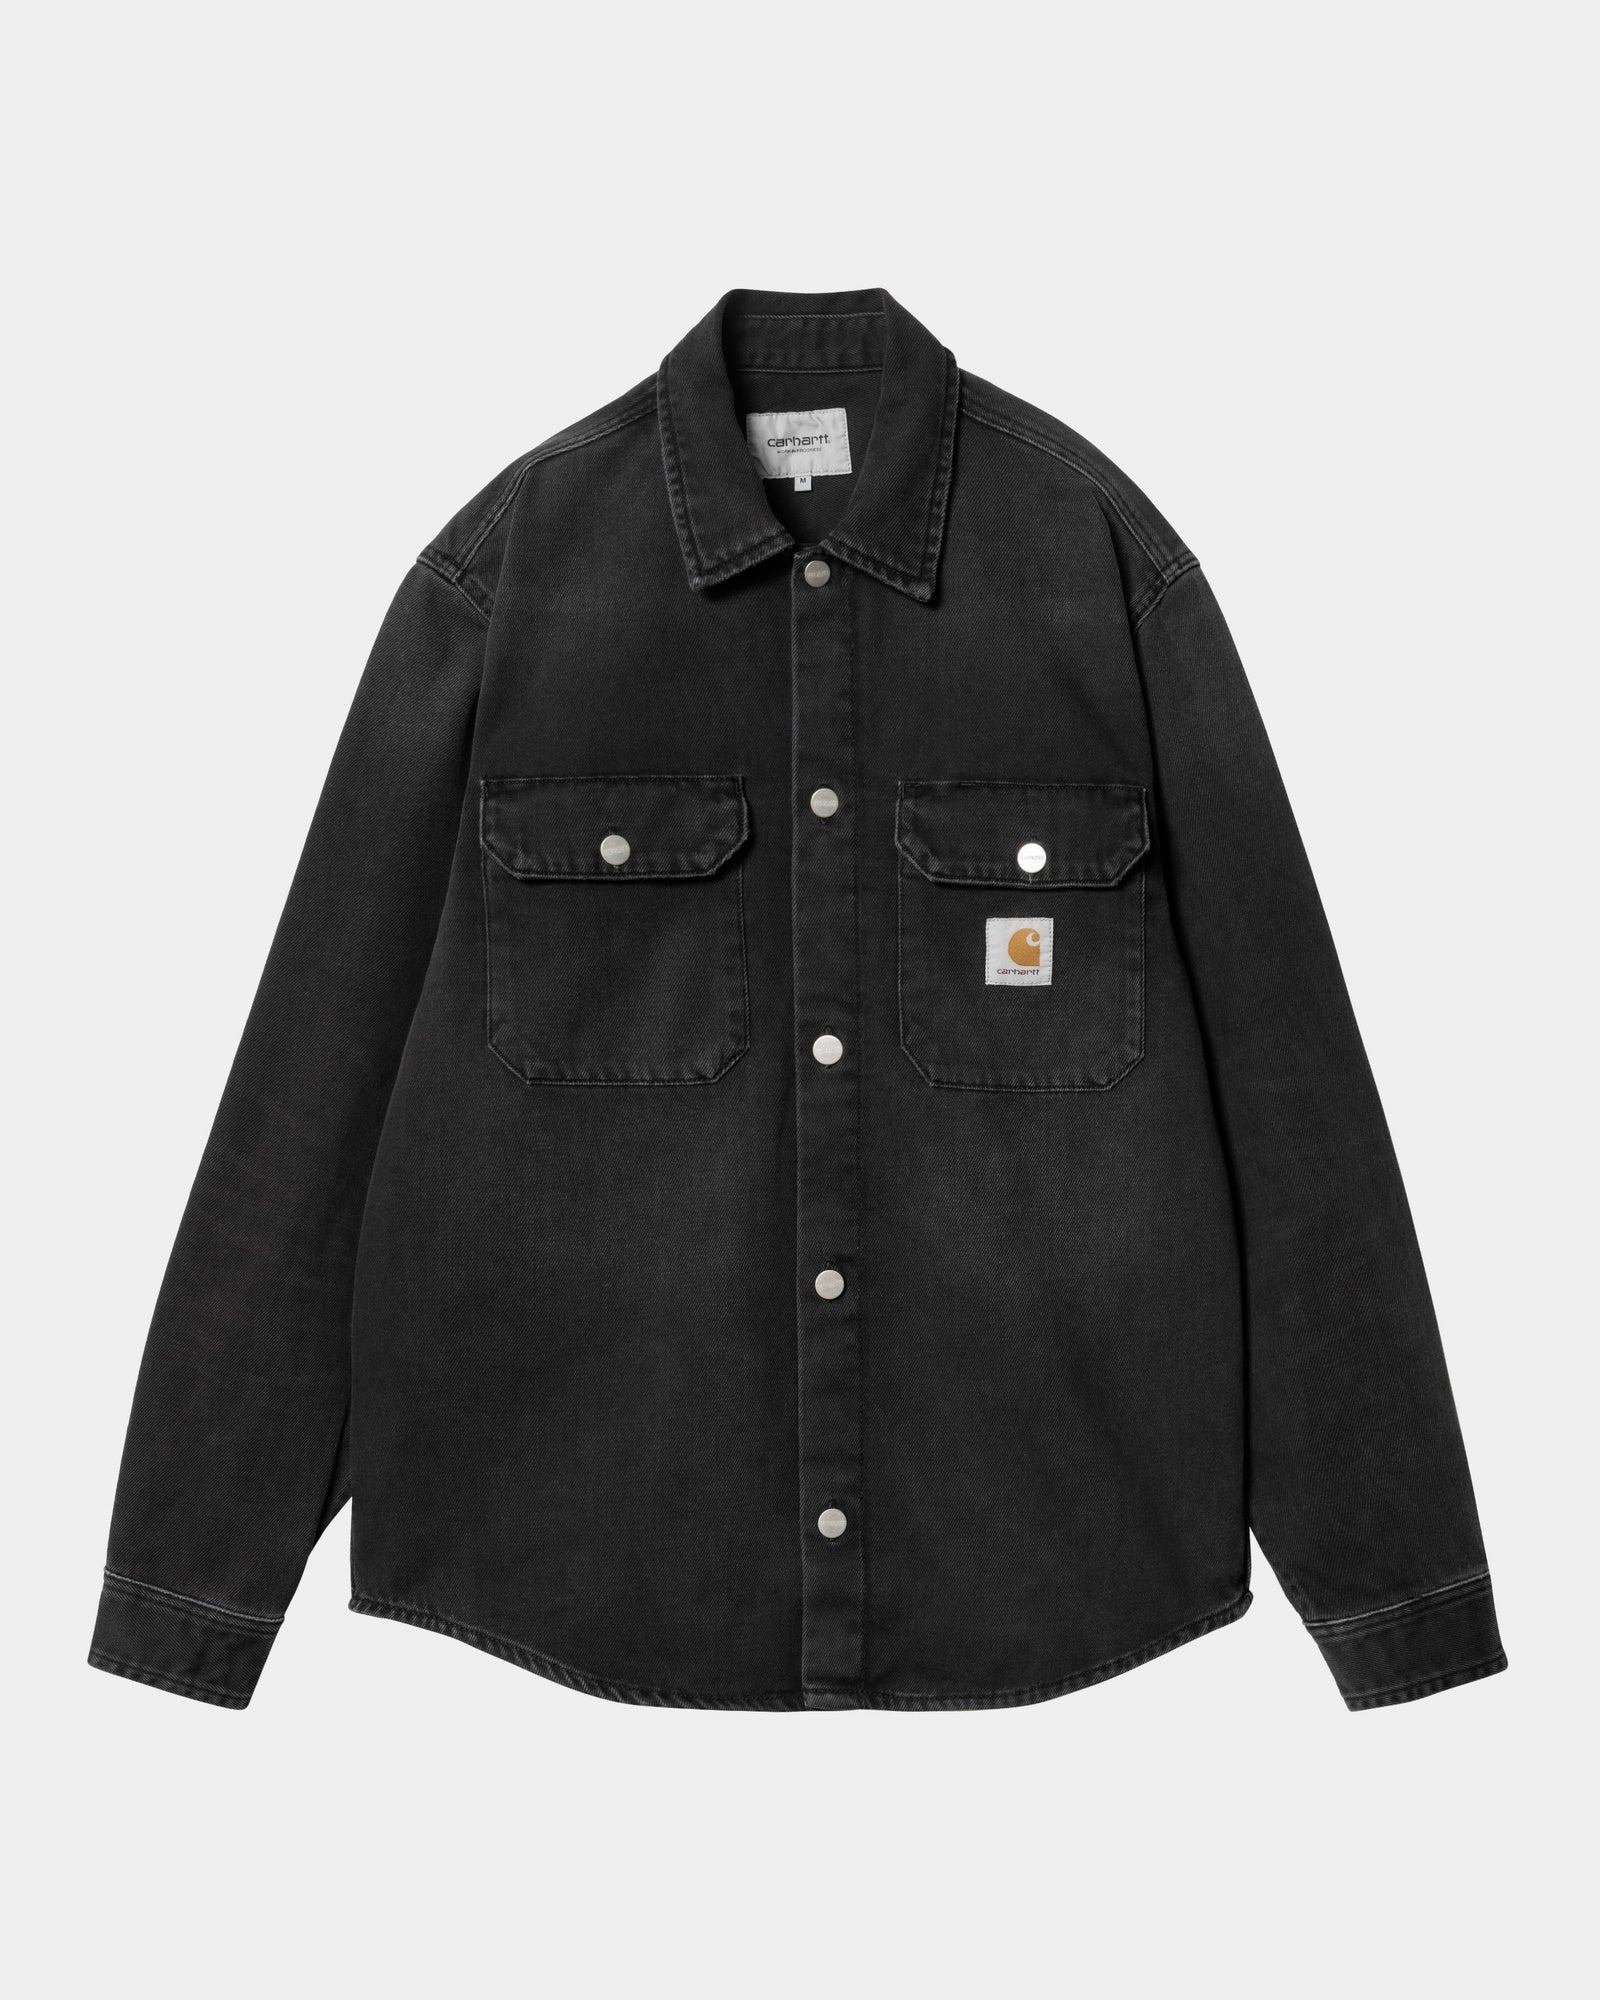 칼하트WIP Carhartt Harvey Shirt Jacket,Black dark used wash